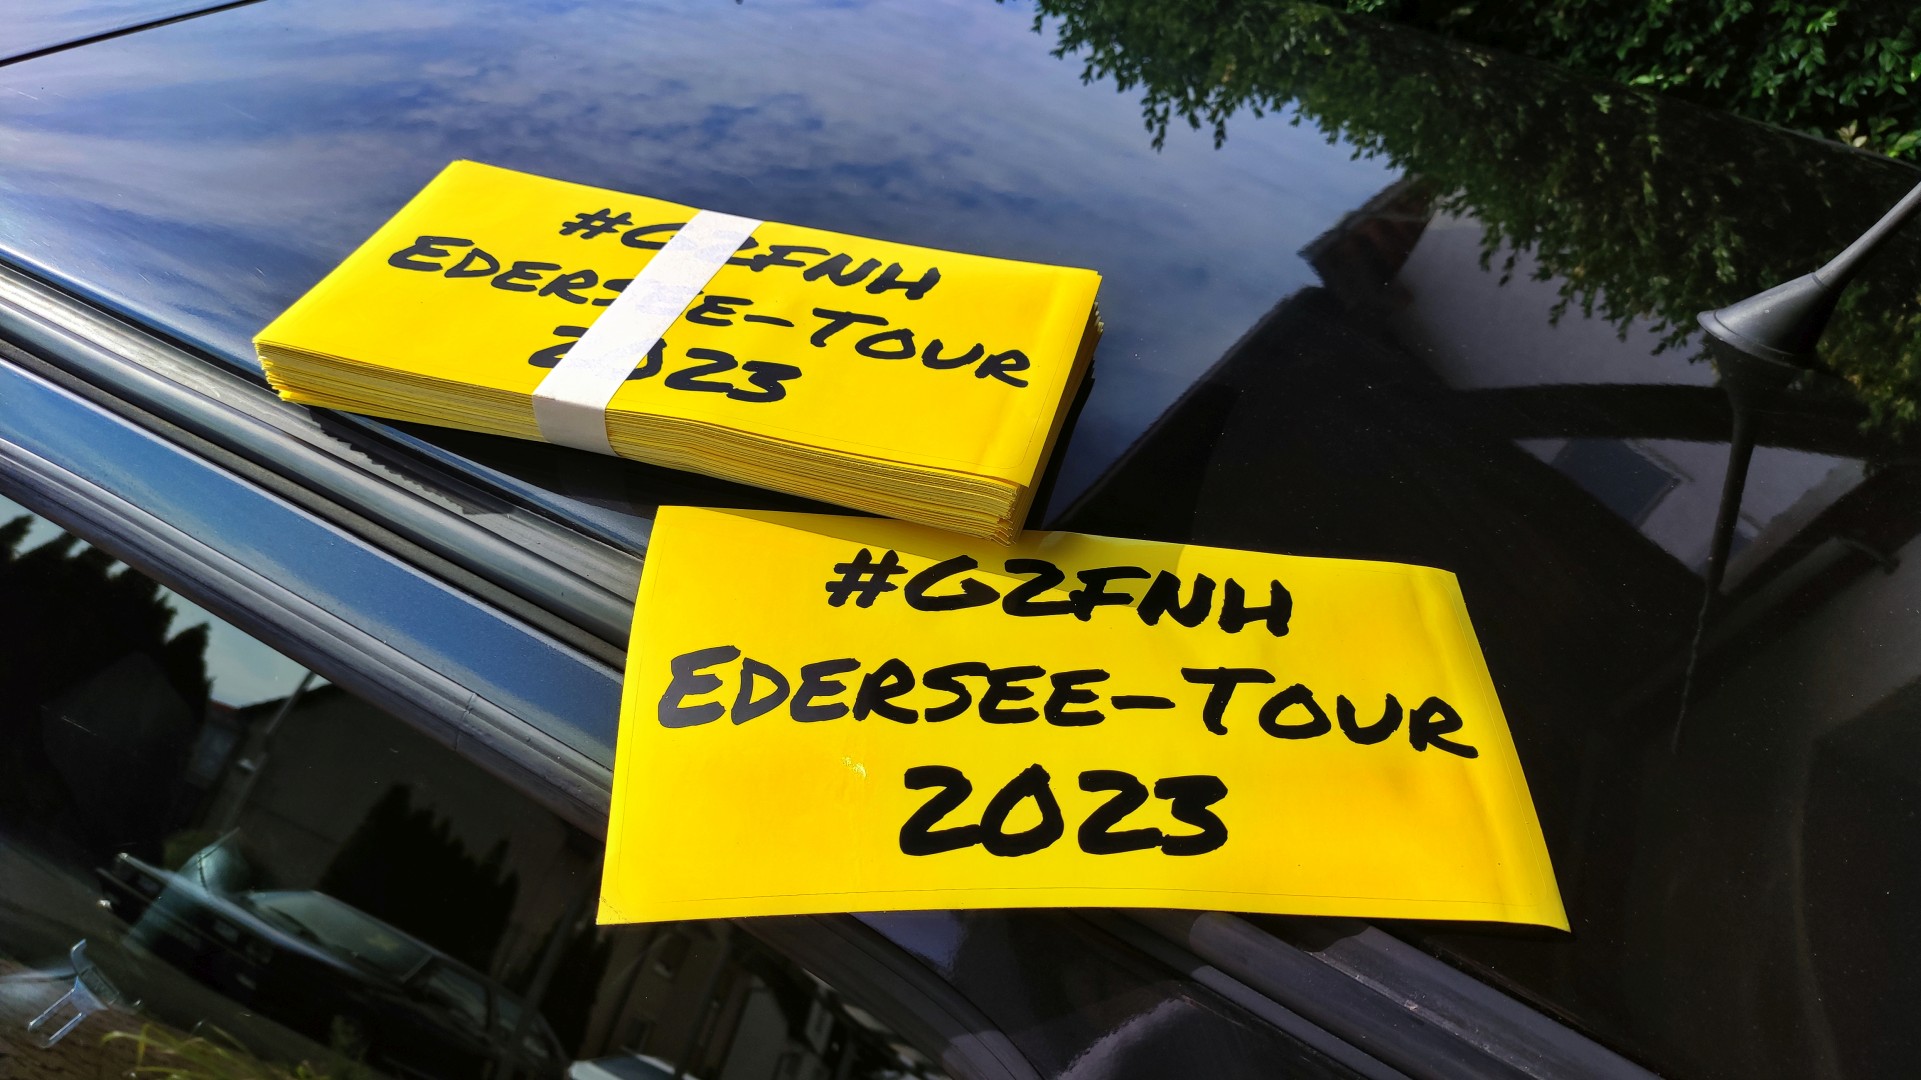 Edersee-Tour_2023_A02.jpg